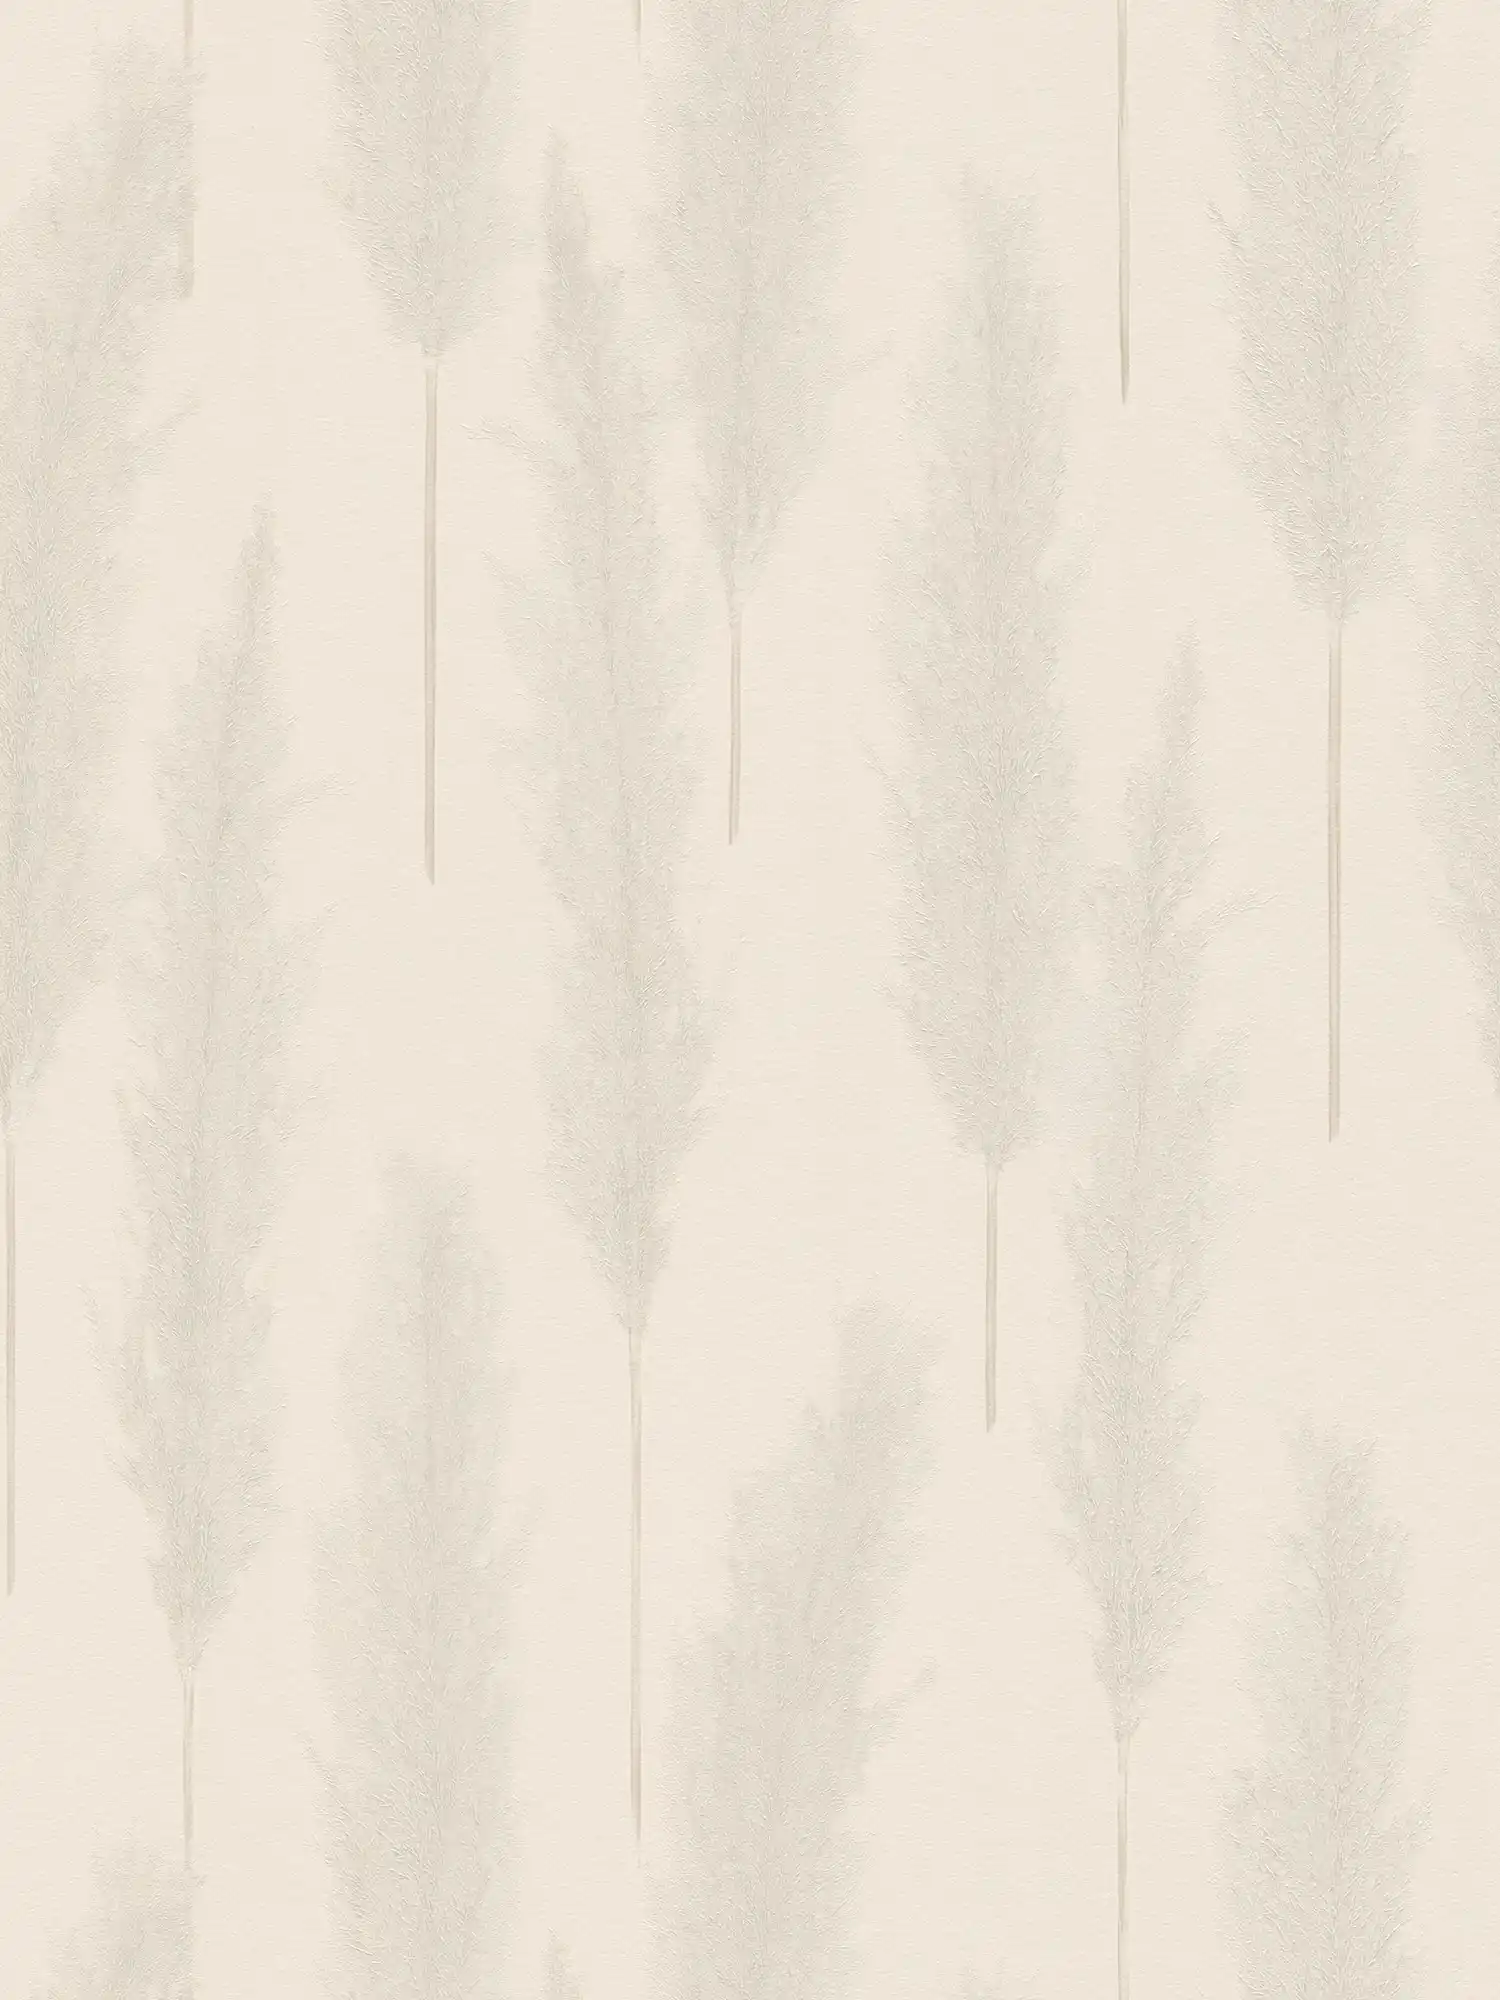 Tapete mit Pampasgras Muster – Beige, Grau, Weiß
